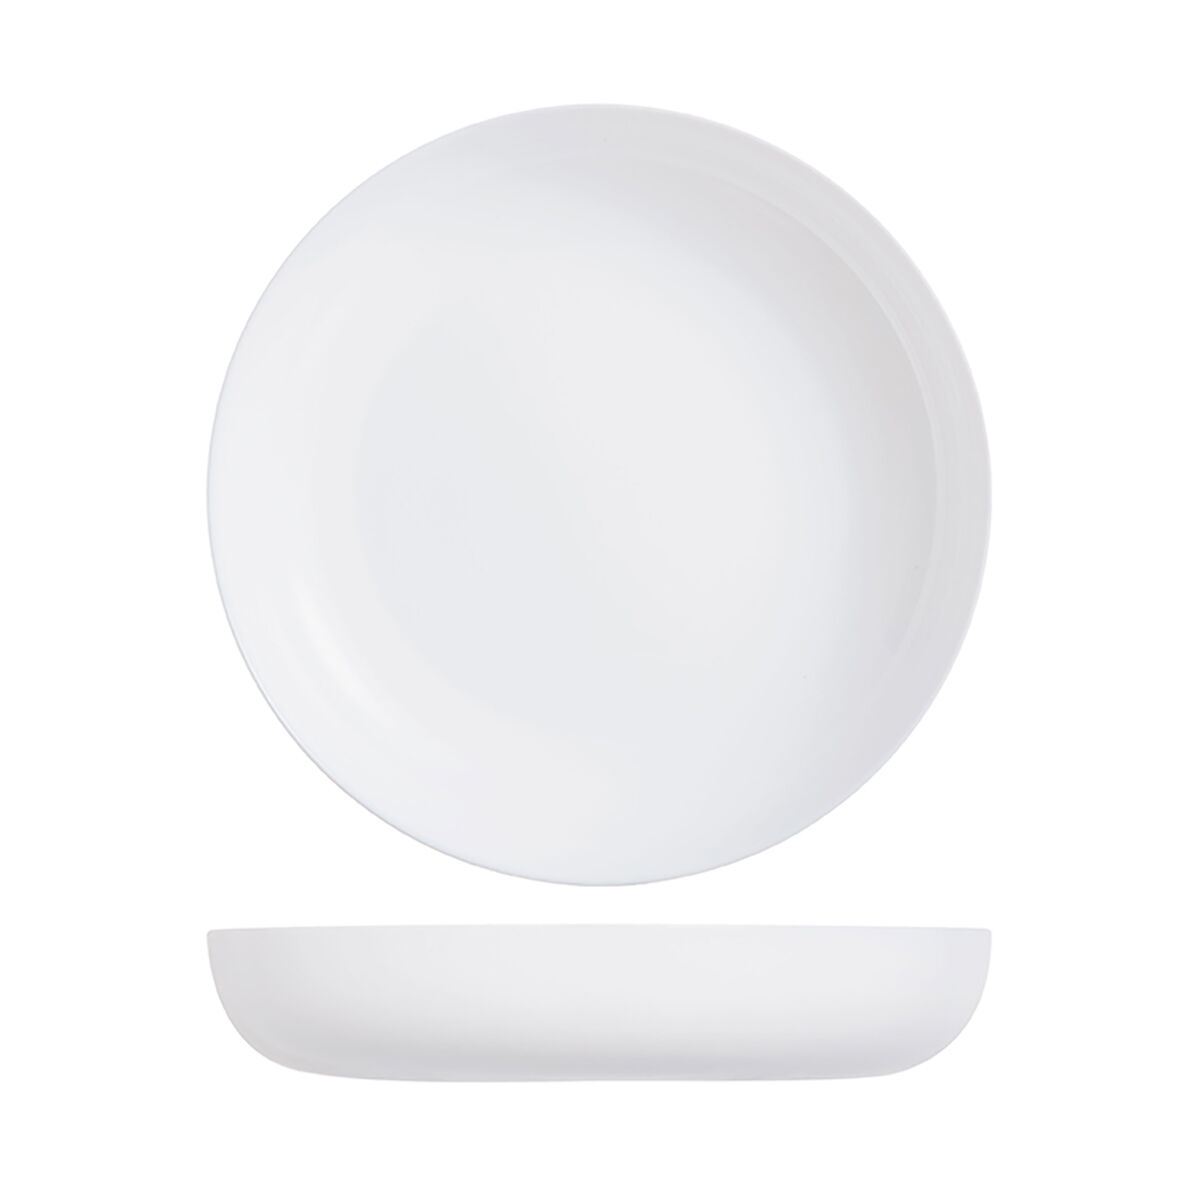 Тарелка глубокая с бортом Luminarc "Эволюшнс" 21 см, стеклокерамика, белый цвет, ARC, (/6/12)